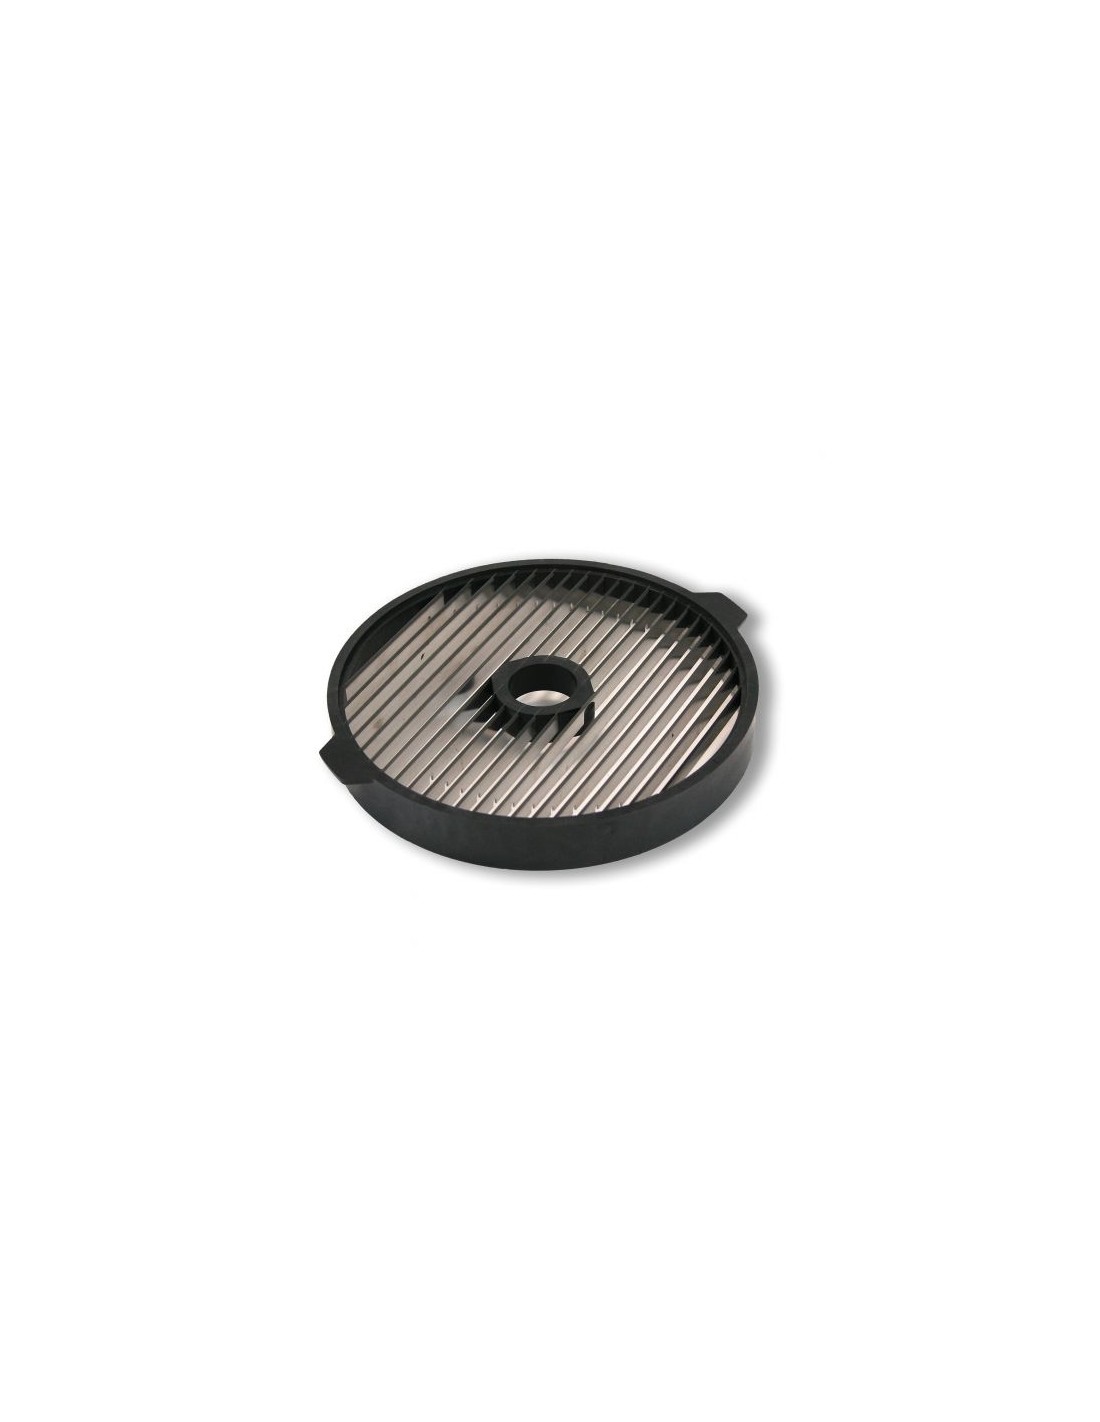 Disco de papas fritas - Diámetro 220 mm - Espesor 8 mm - Para usar con discos de corte FC o FCO